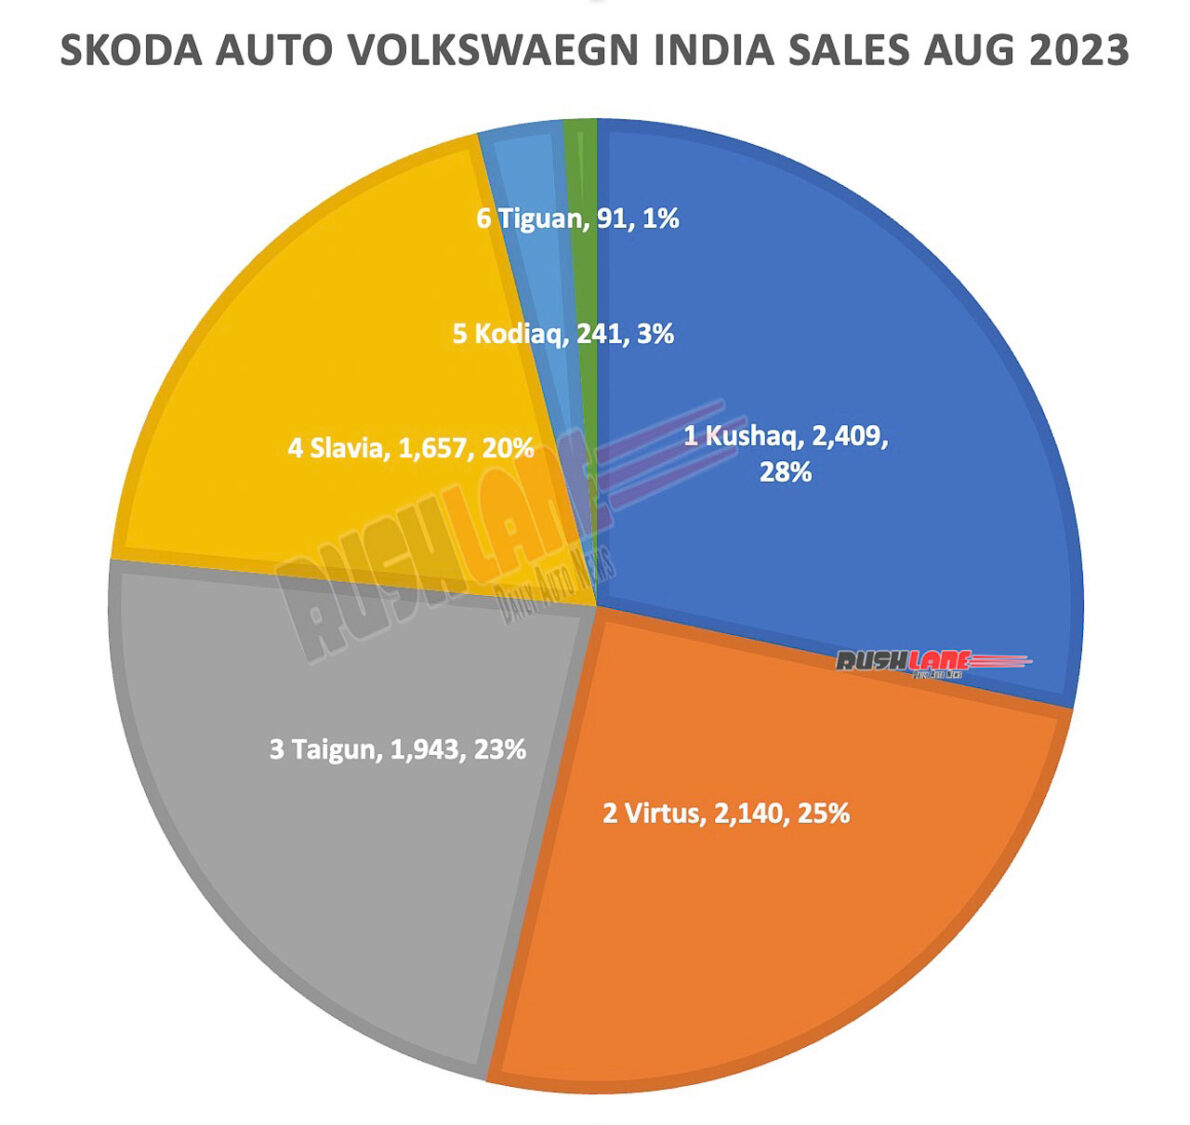 Skoda Auto VW India Sales Aug 2023